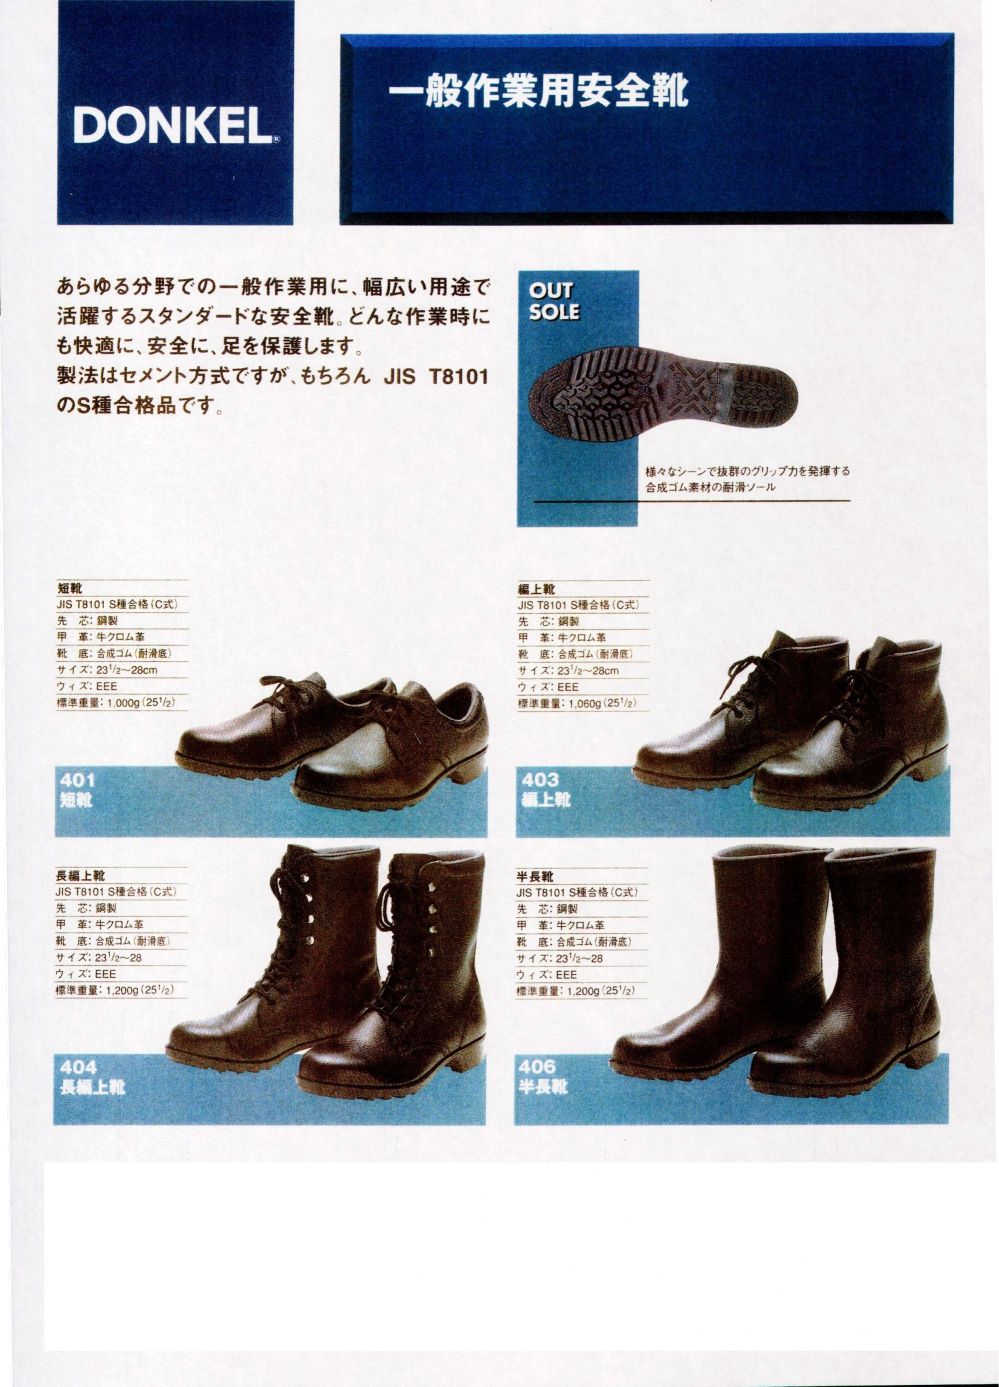 ユニフォーム1.COM 作業服JP メンズワーキング ドンケル 安全靴 2014 